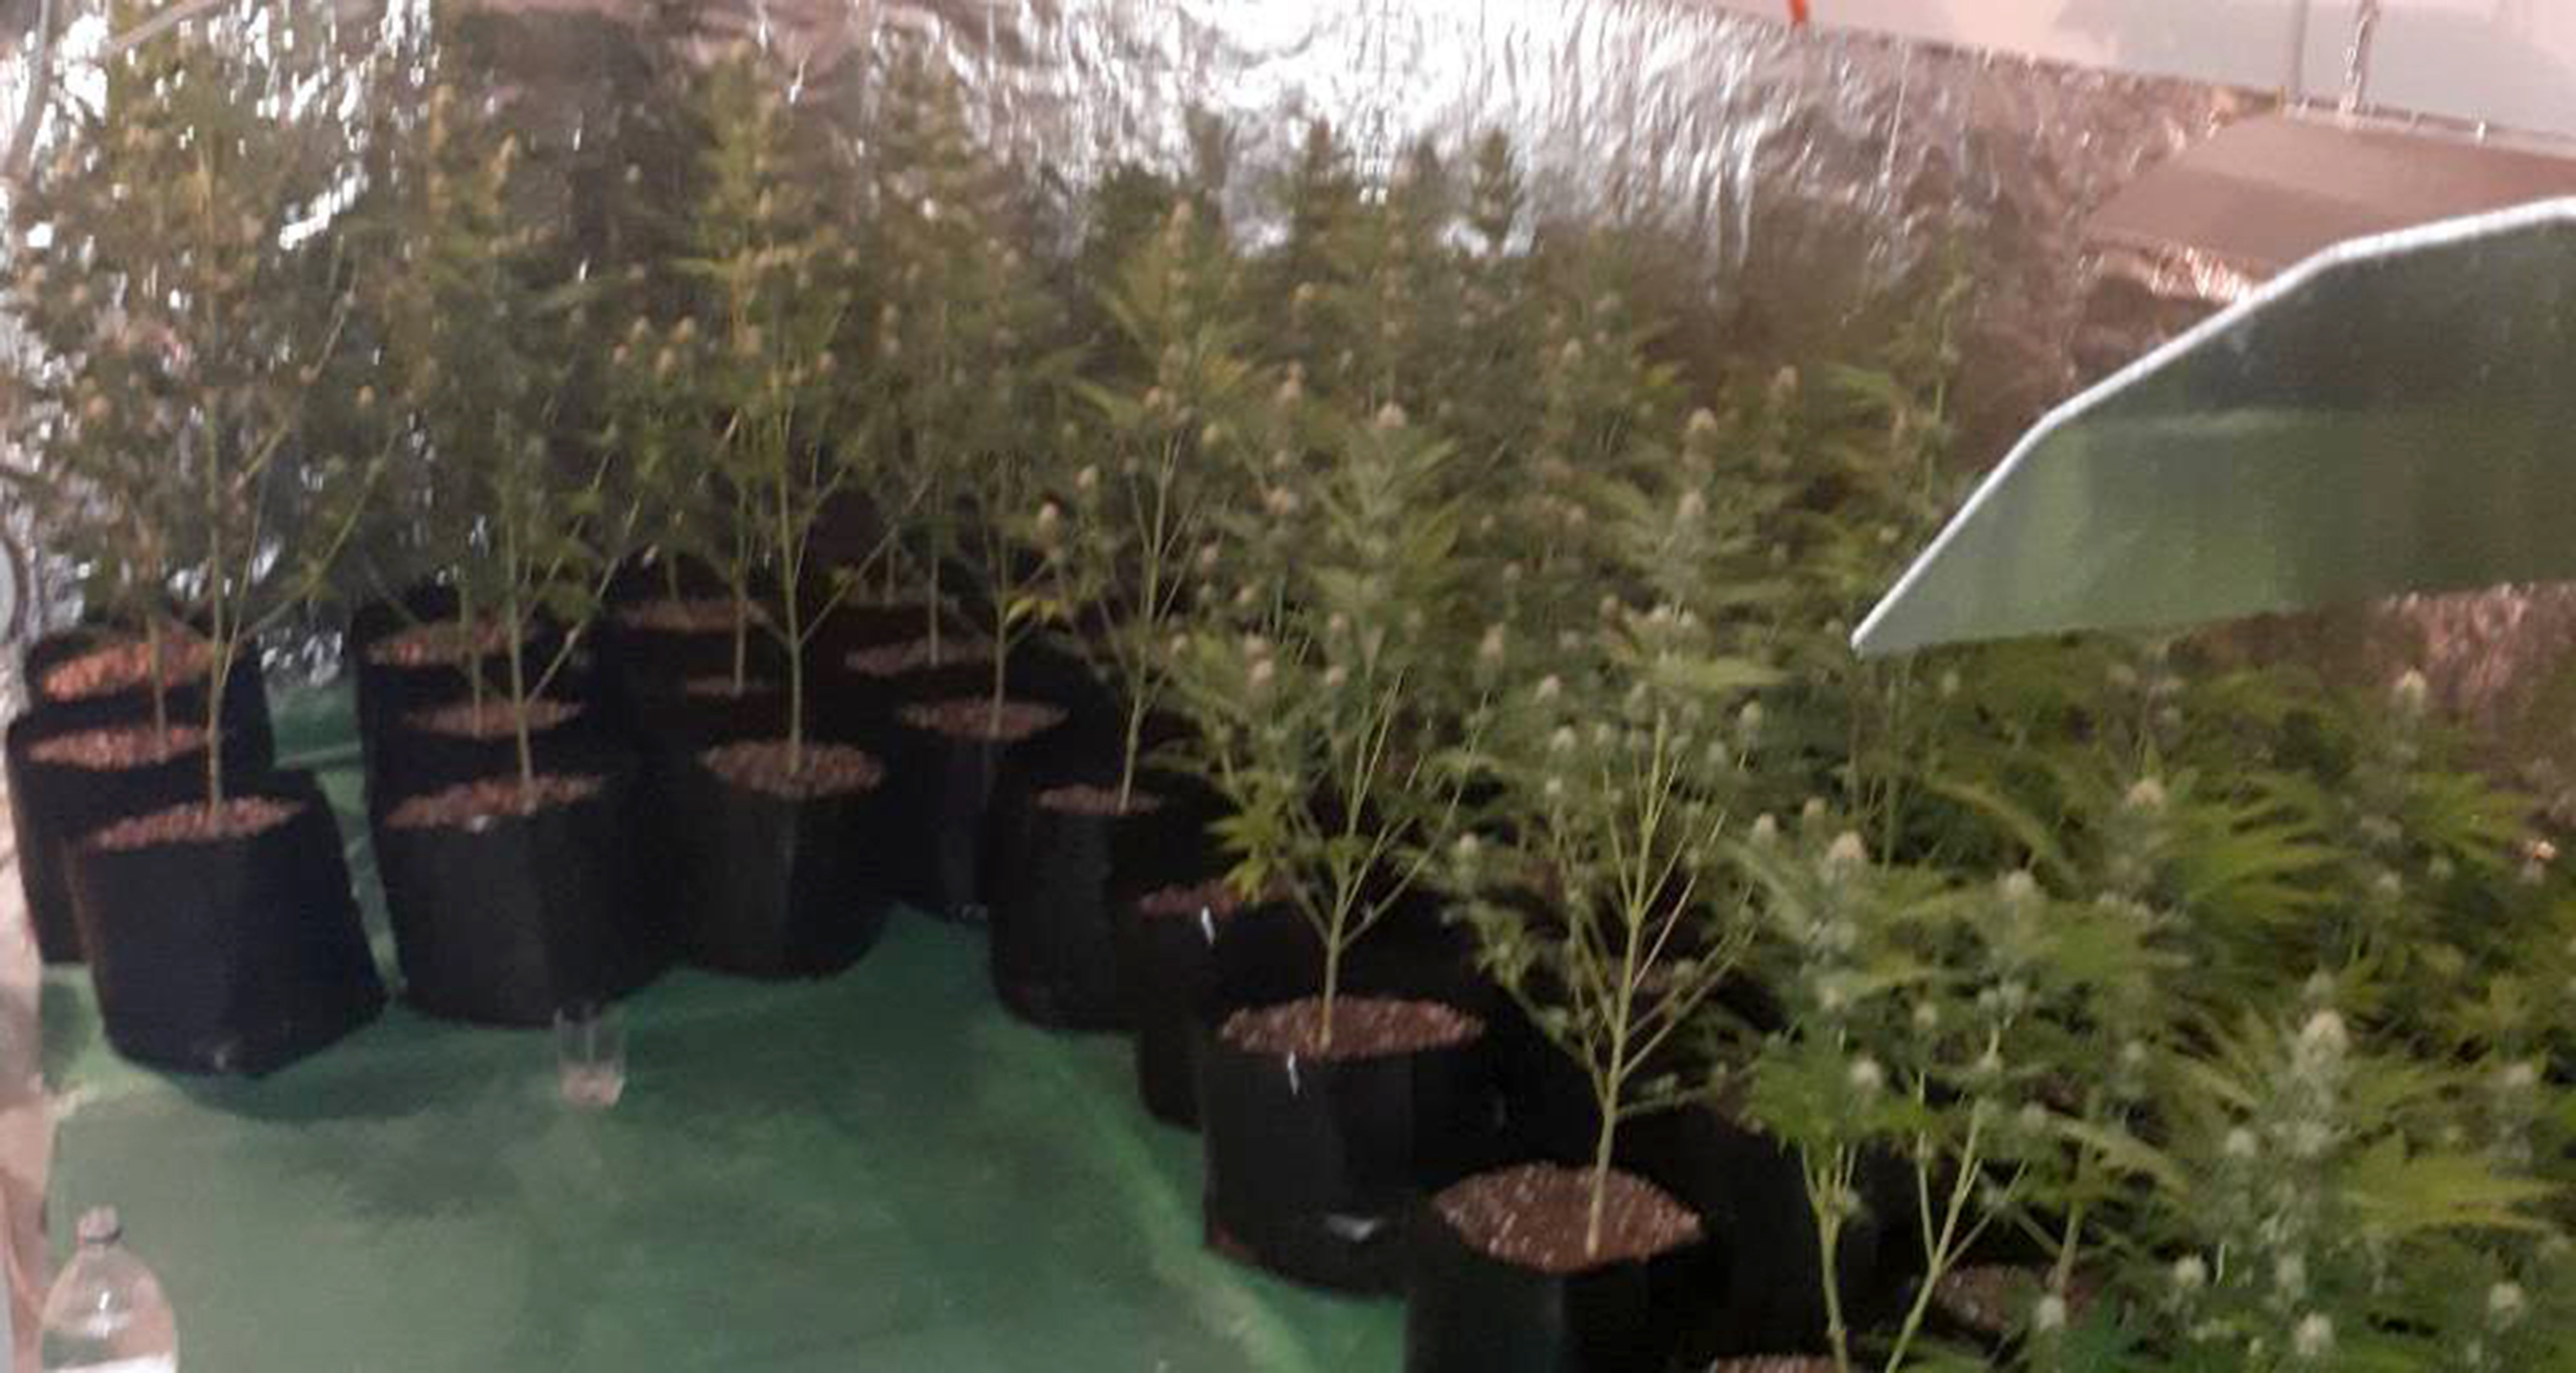 Полиција запленила 16,5 килограма марихуане и у околини Обреновца открила лабораторију